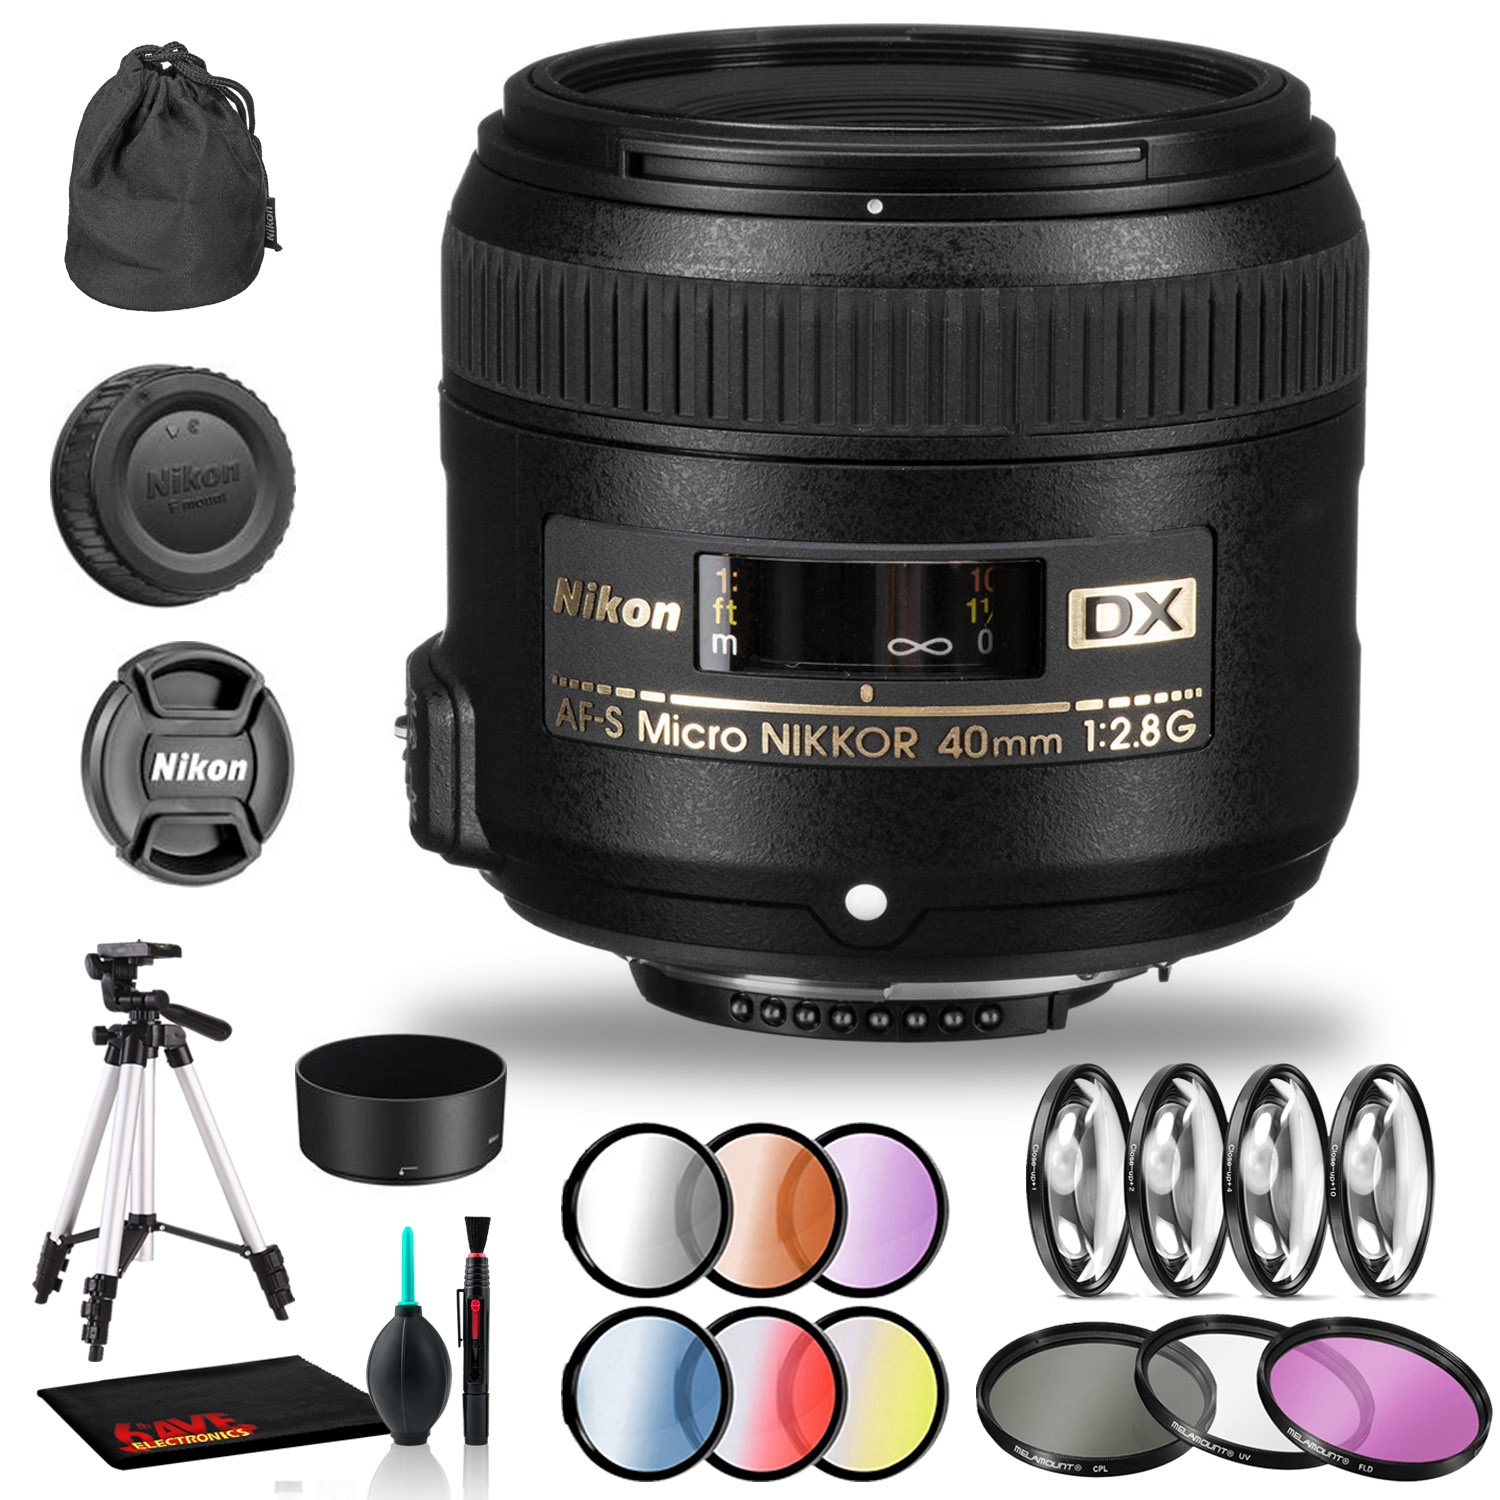 Nikon AF-S DX Micro NIKKOR 40mm f/2.8G Lens Includes Filter Kits and Tripod (Intl Model)